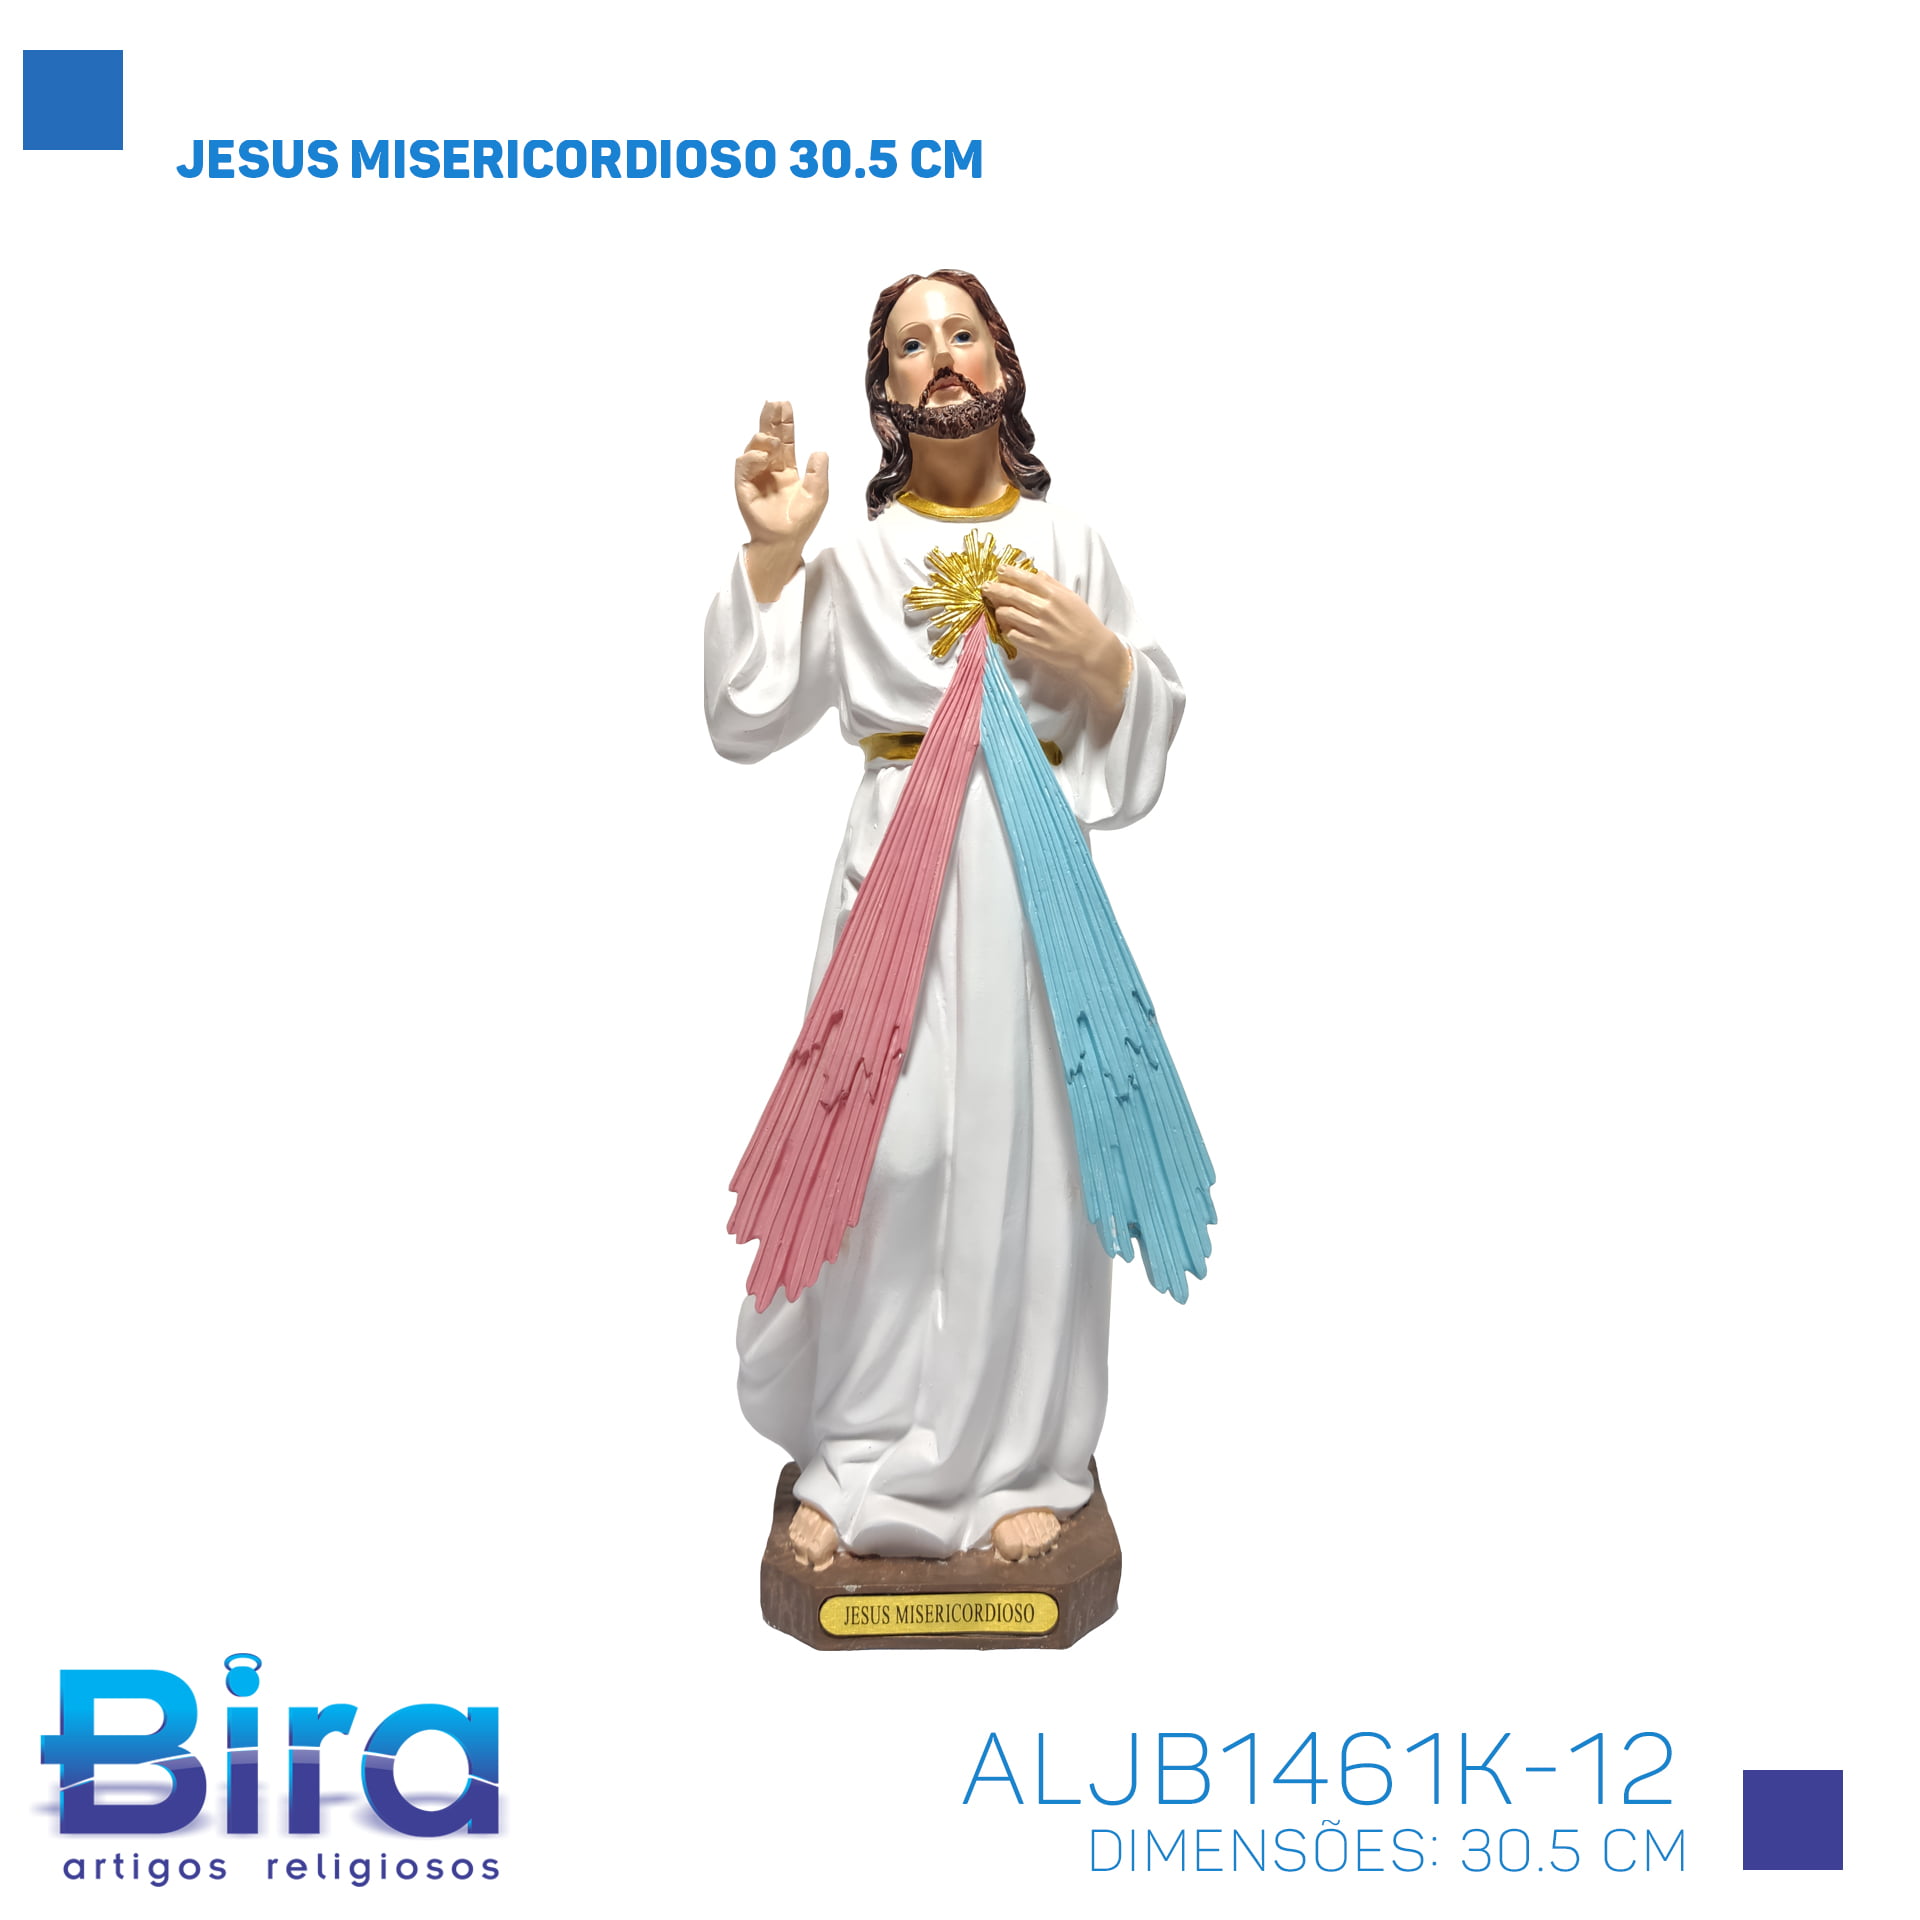 Bira Artigos Religiosos - JESUS MISERICORDIOSO 30.5 CM - Cod. ALJB1461K-12